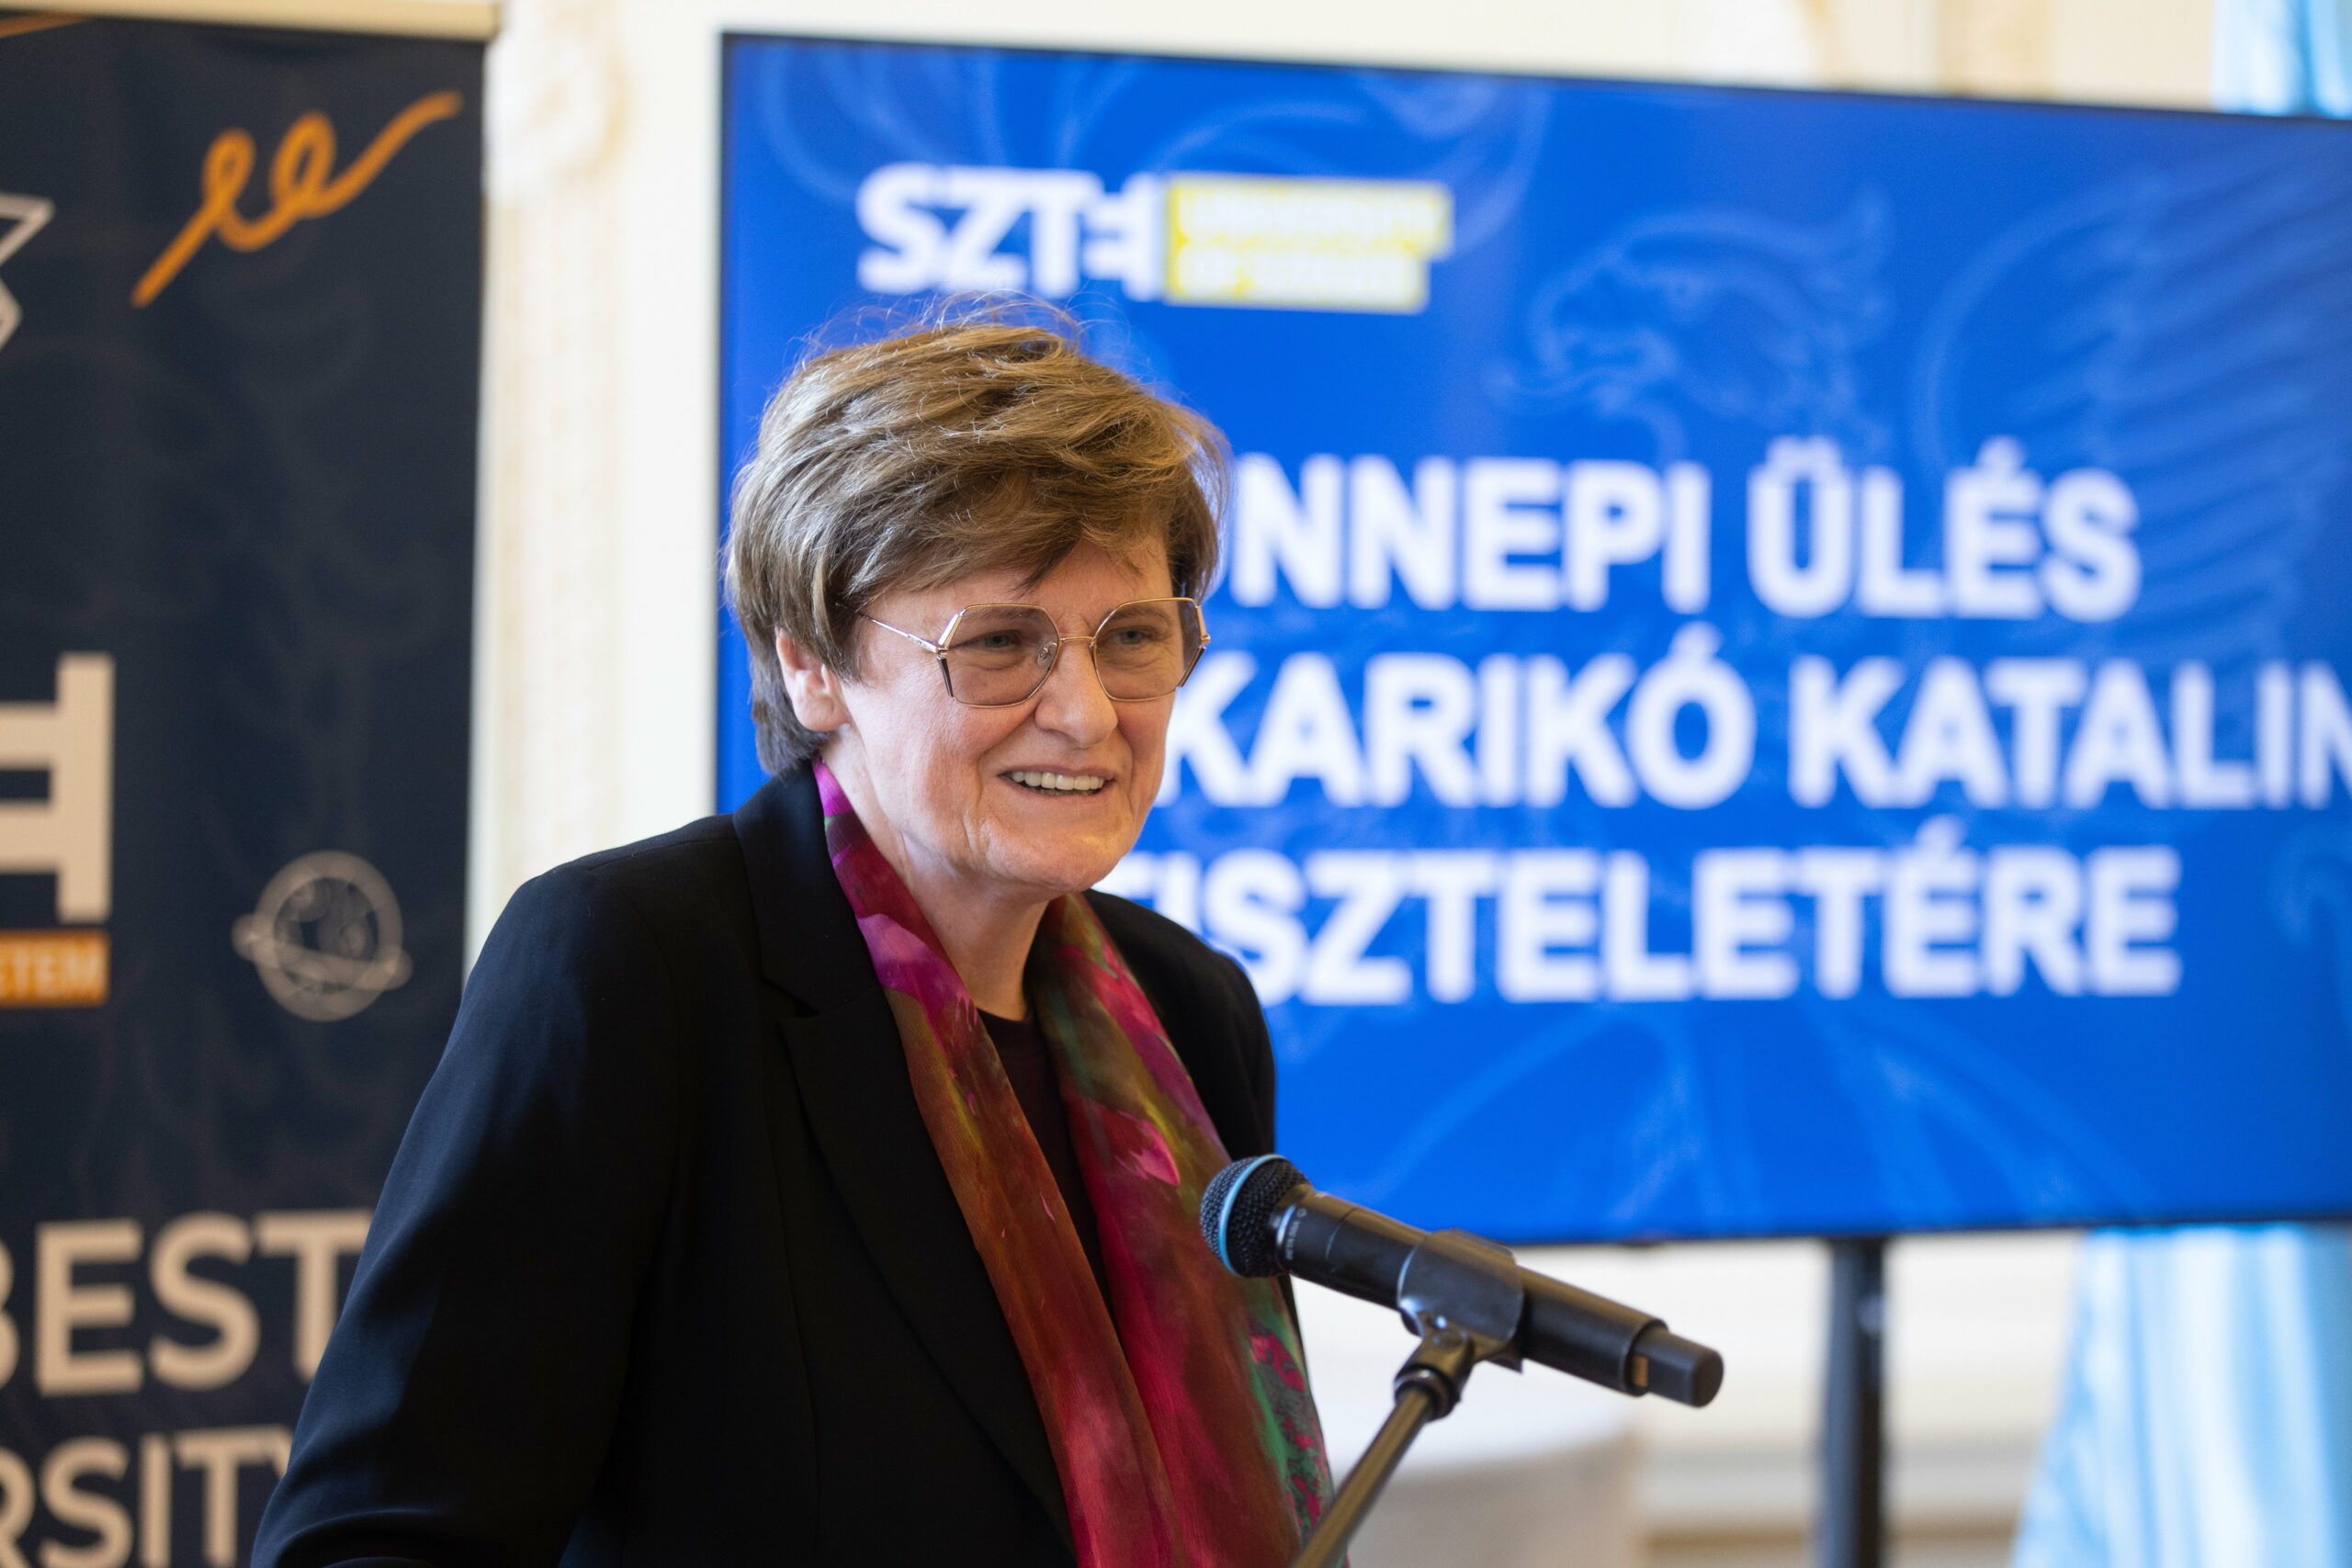 Karikó Katalin a Nobel-díjjal járó pénzről: „Jachtom nincs, és nem is lesz soha. Az oktatásra és a kutatásra szeretném fordítani az összeget”